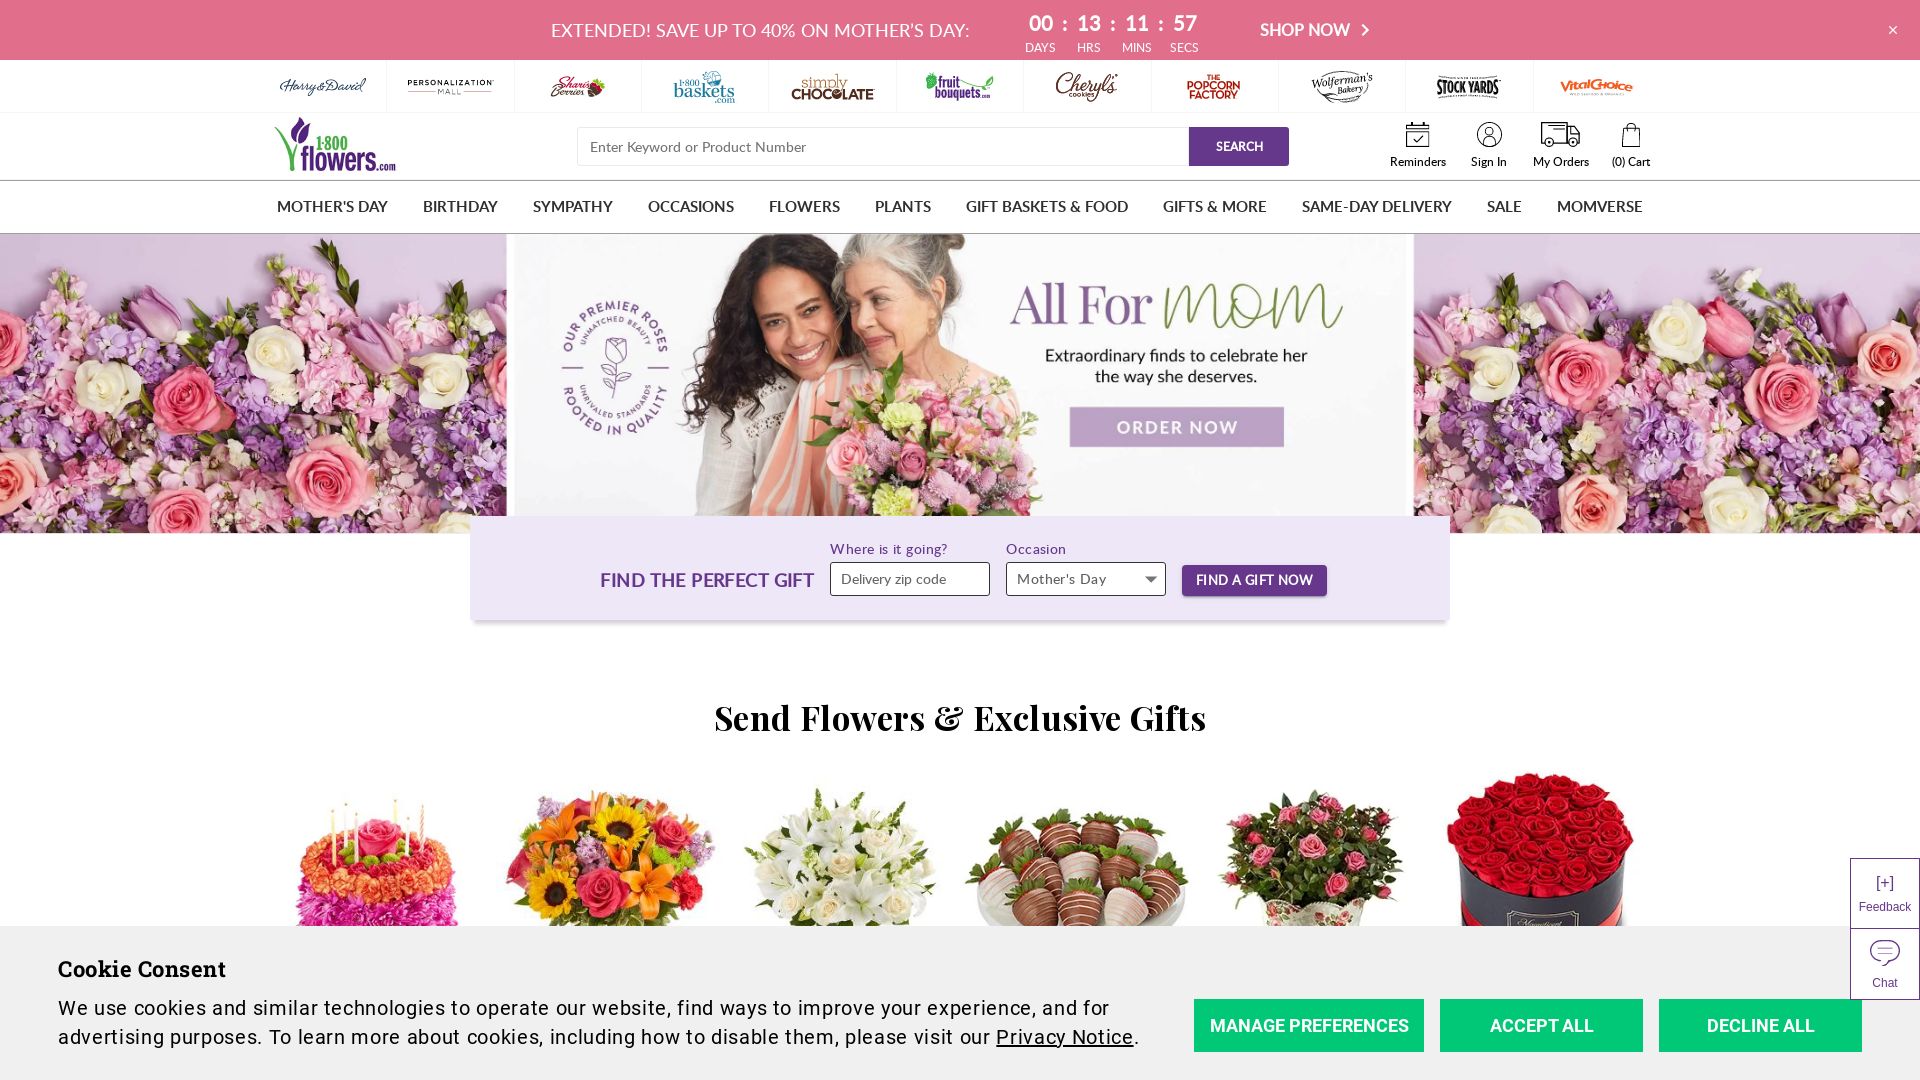 Estado web 1800flowers.com está   ONLINE